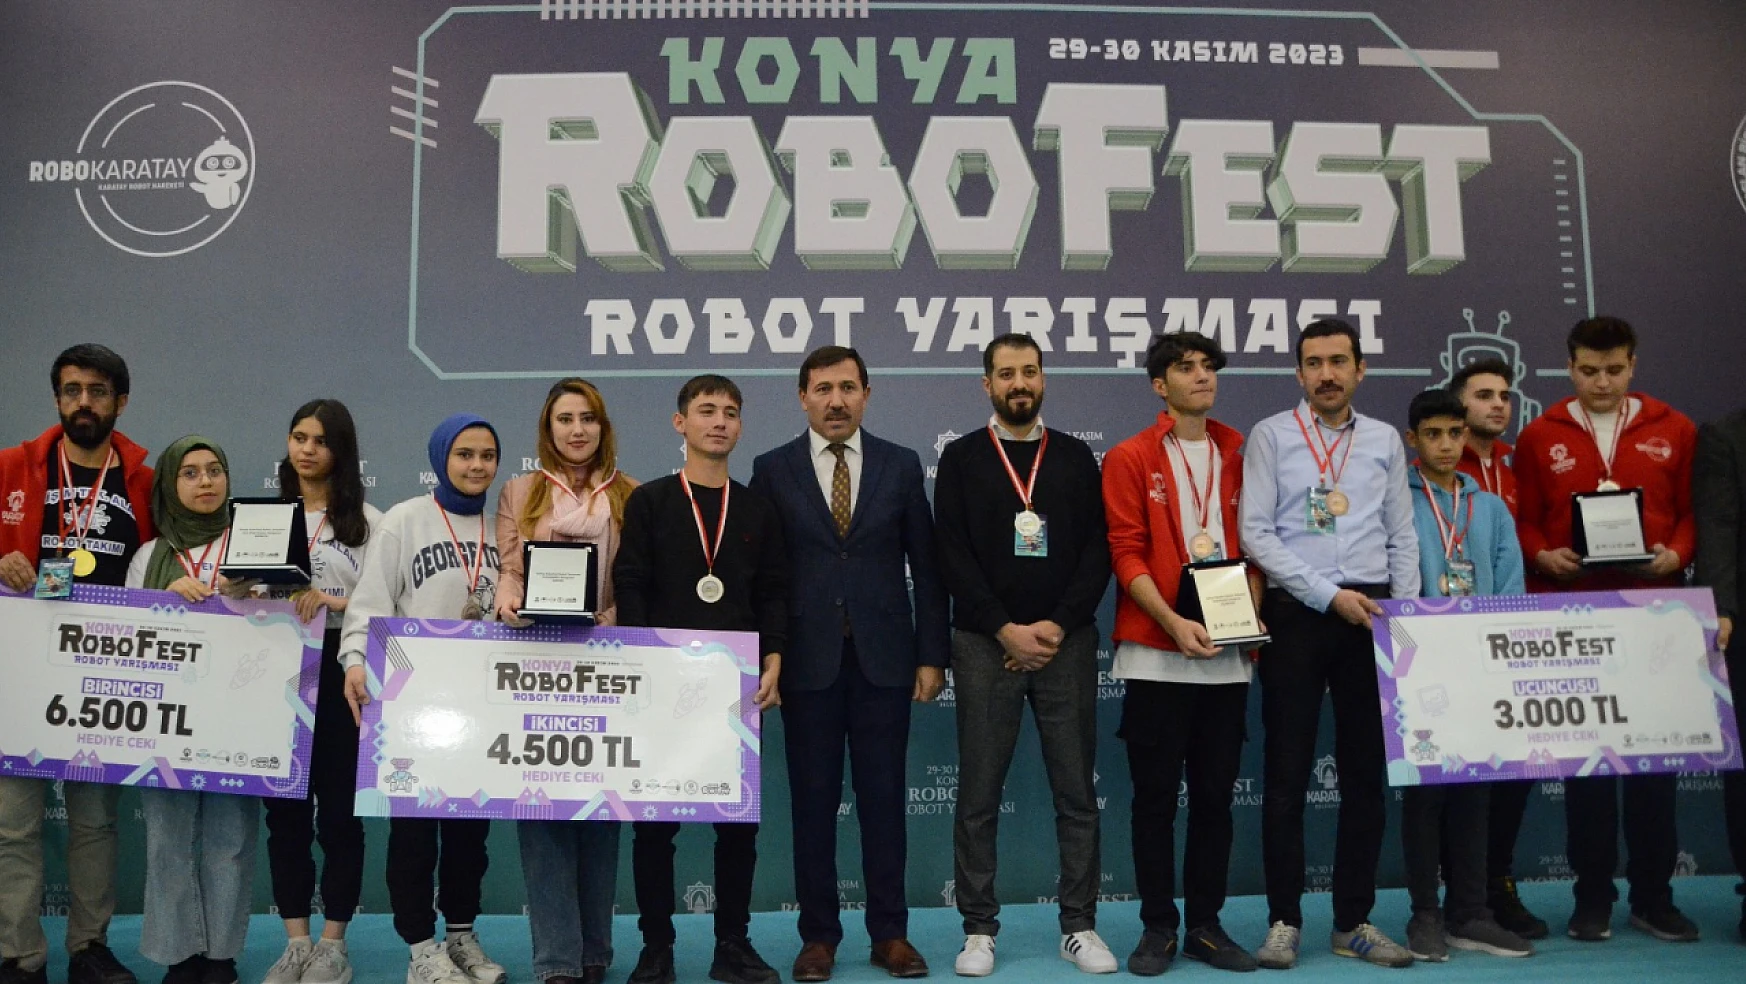 Konya RoboFest Robot Yarışması sona erdi!